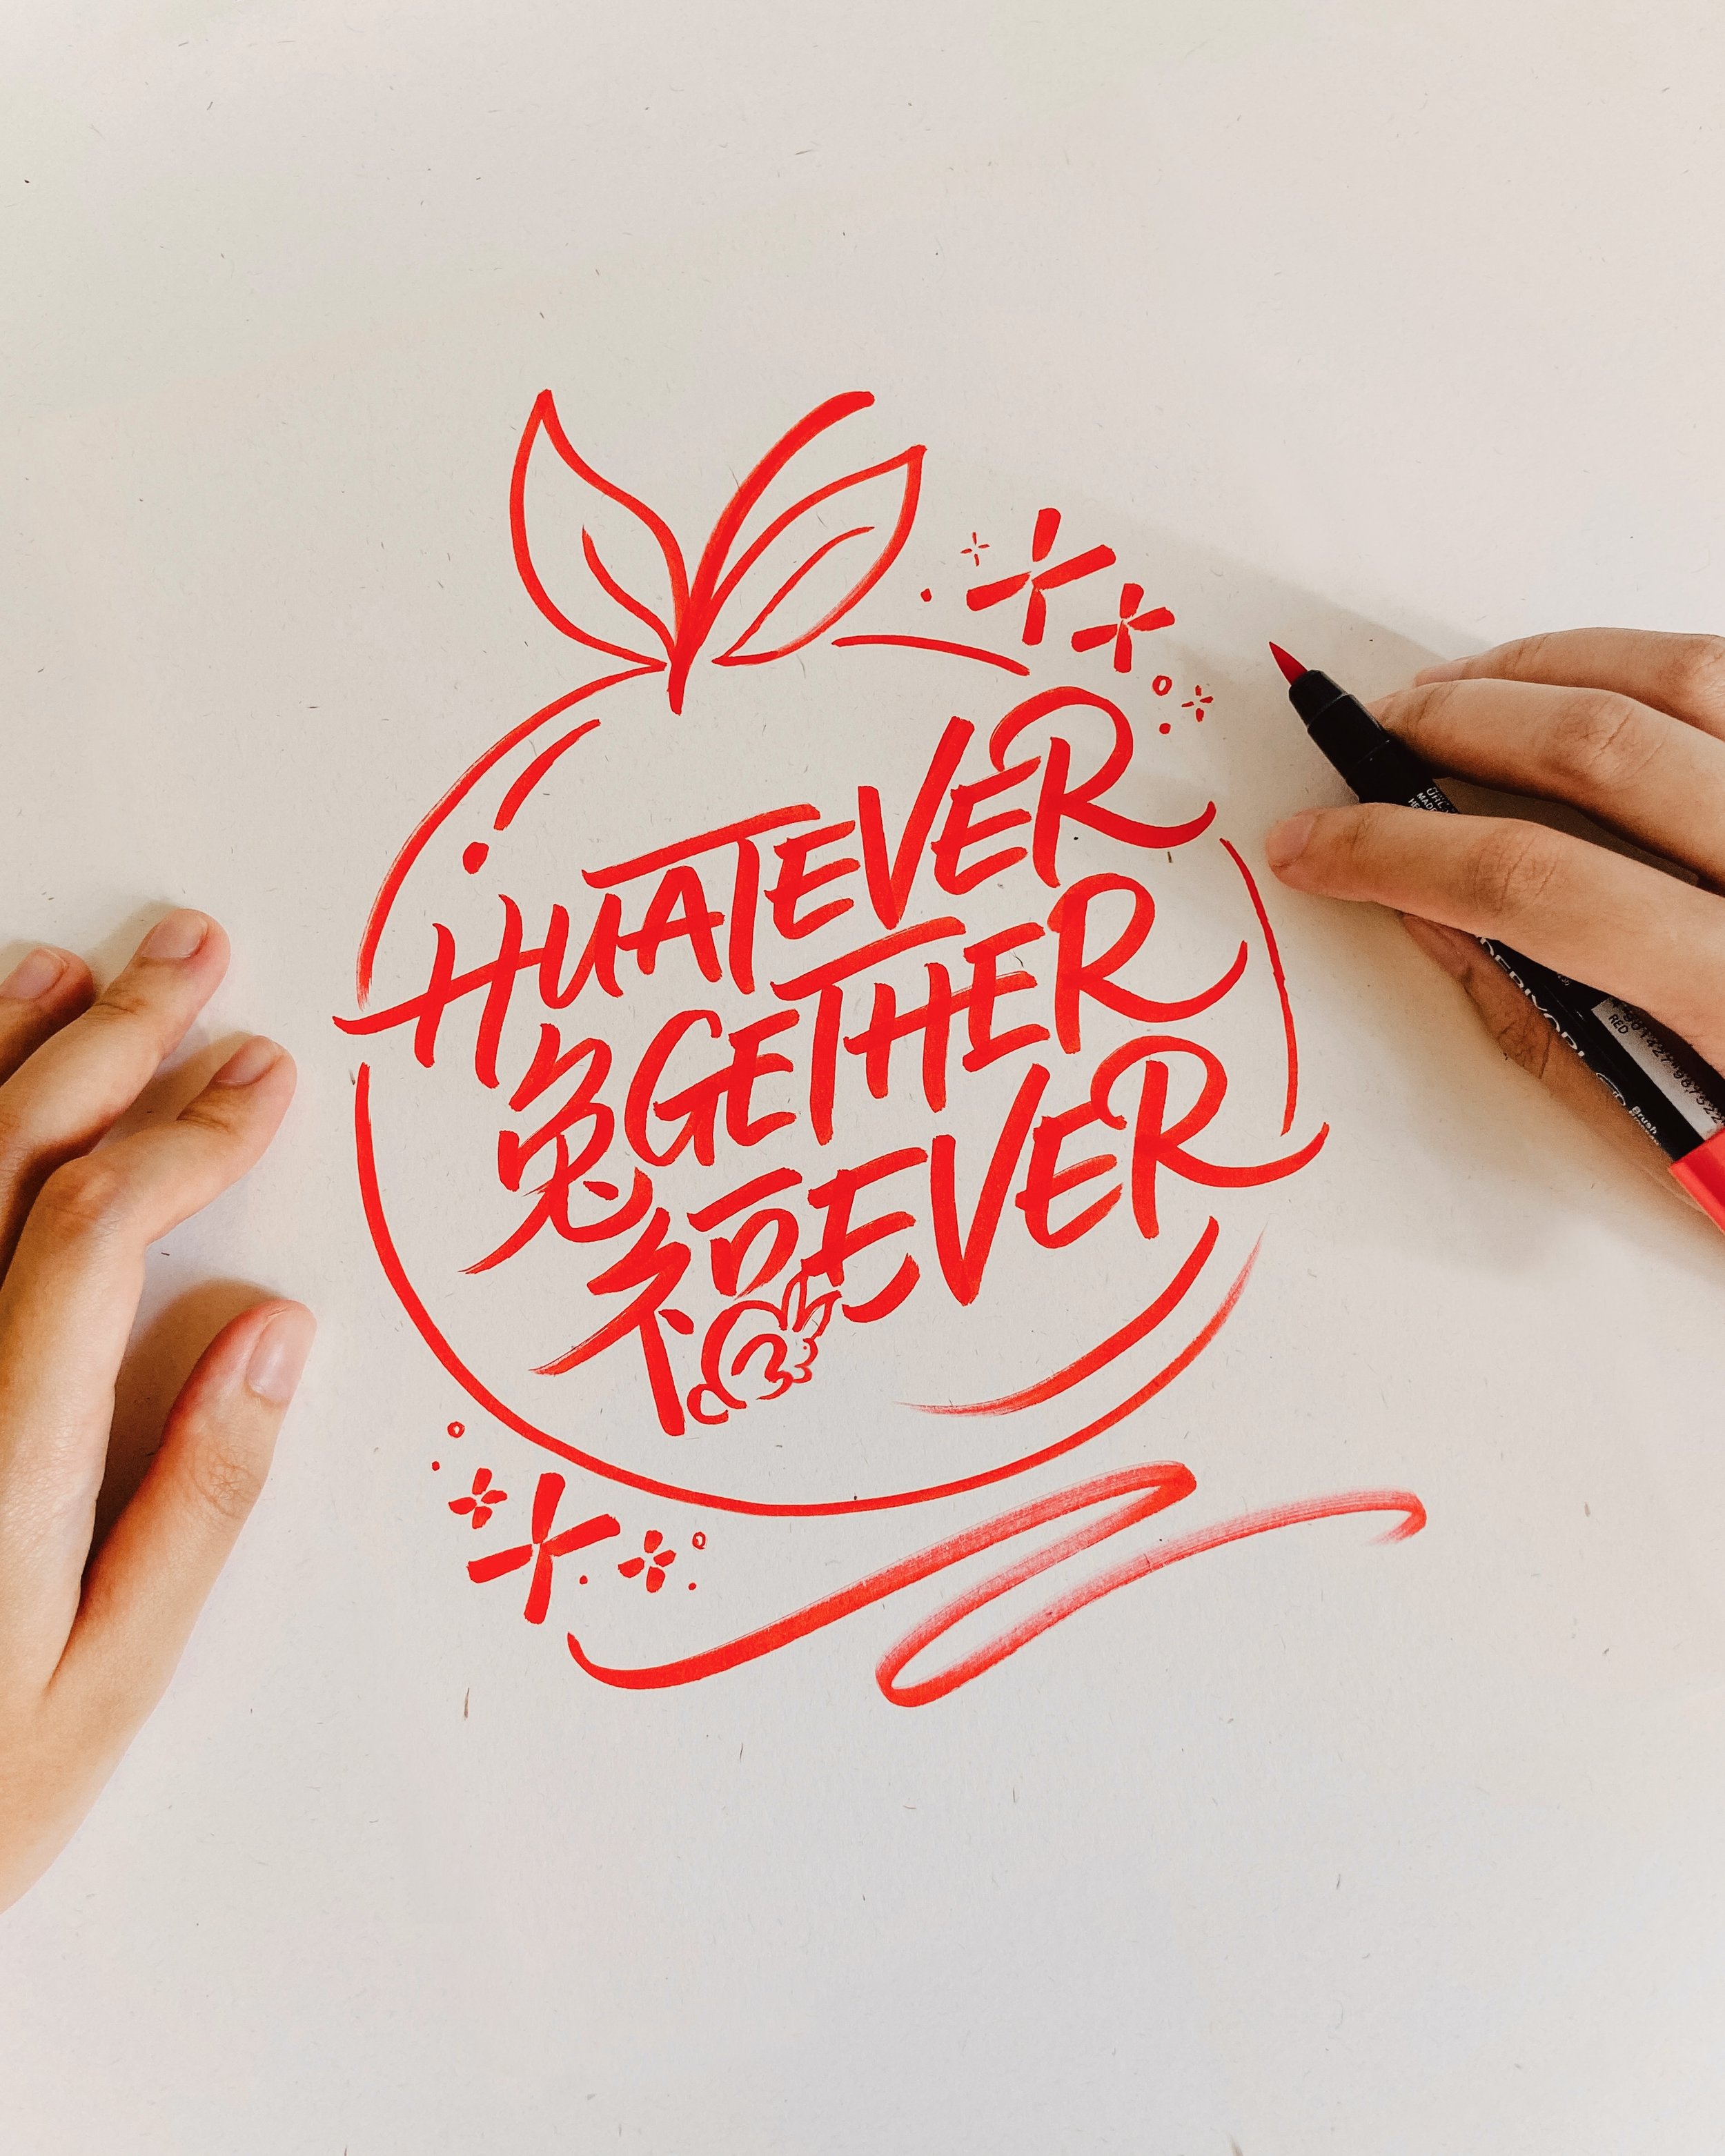 huatever together forever - Lunar New Year Lettering Artwork.jpg